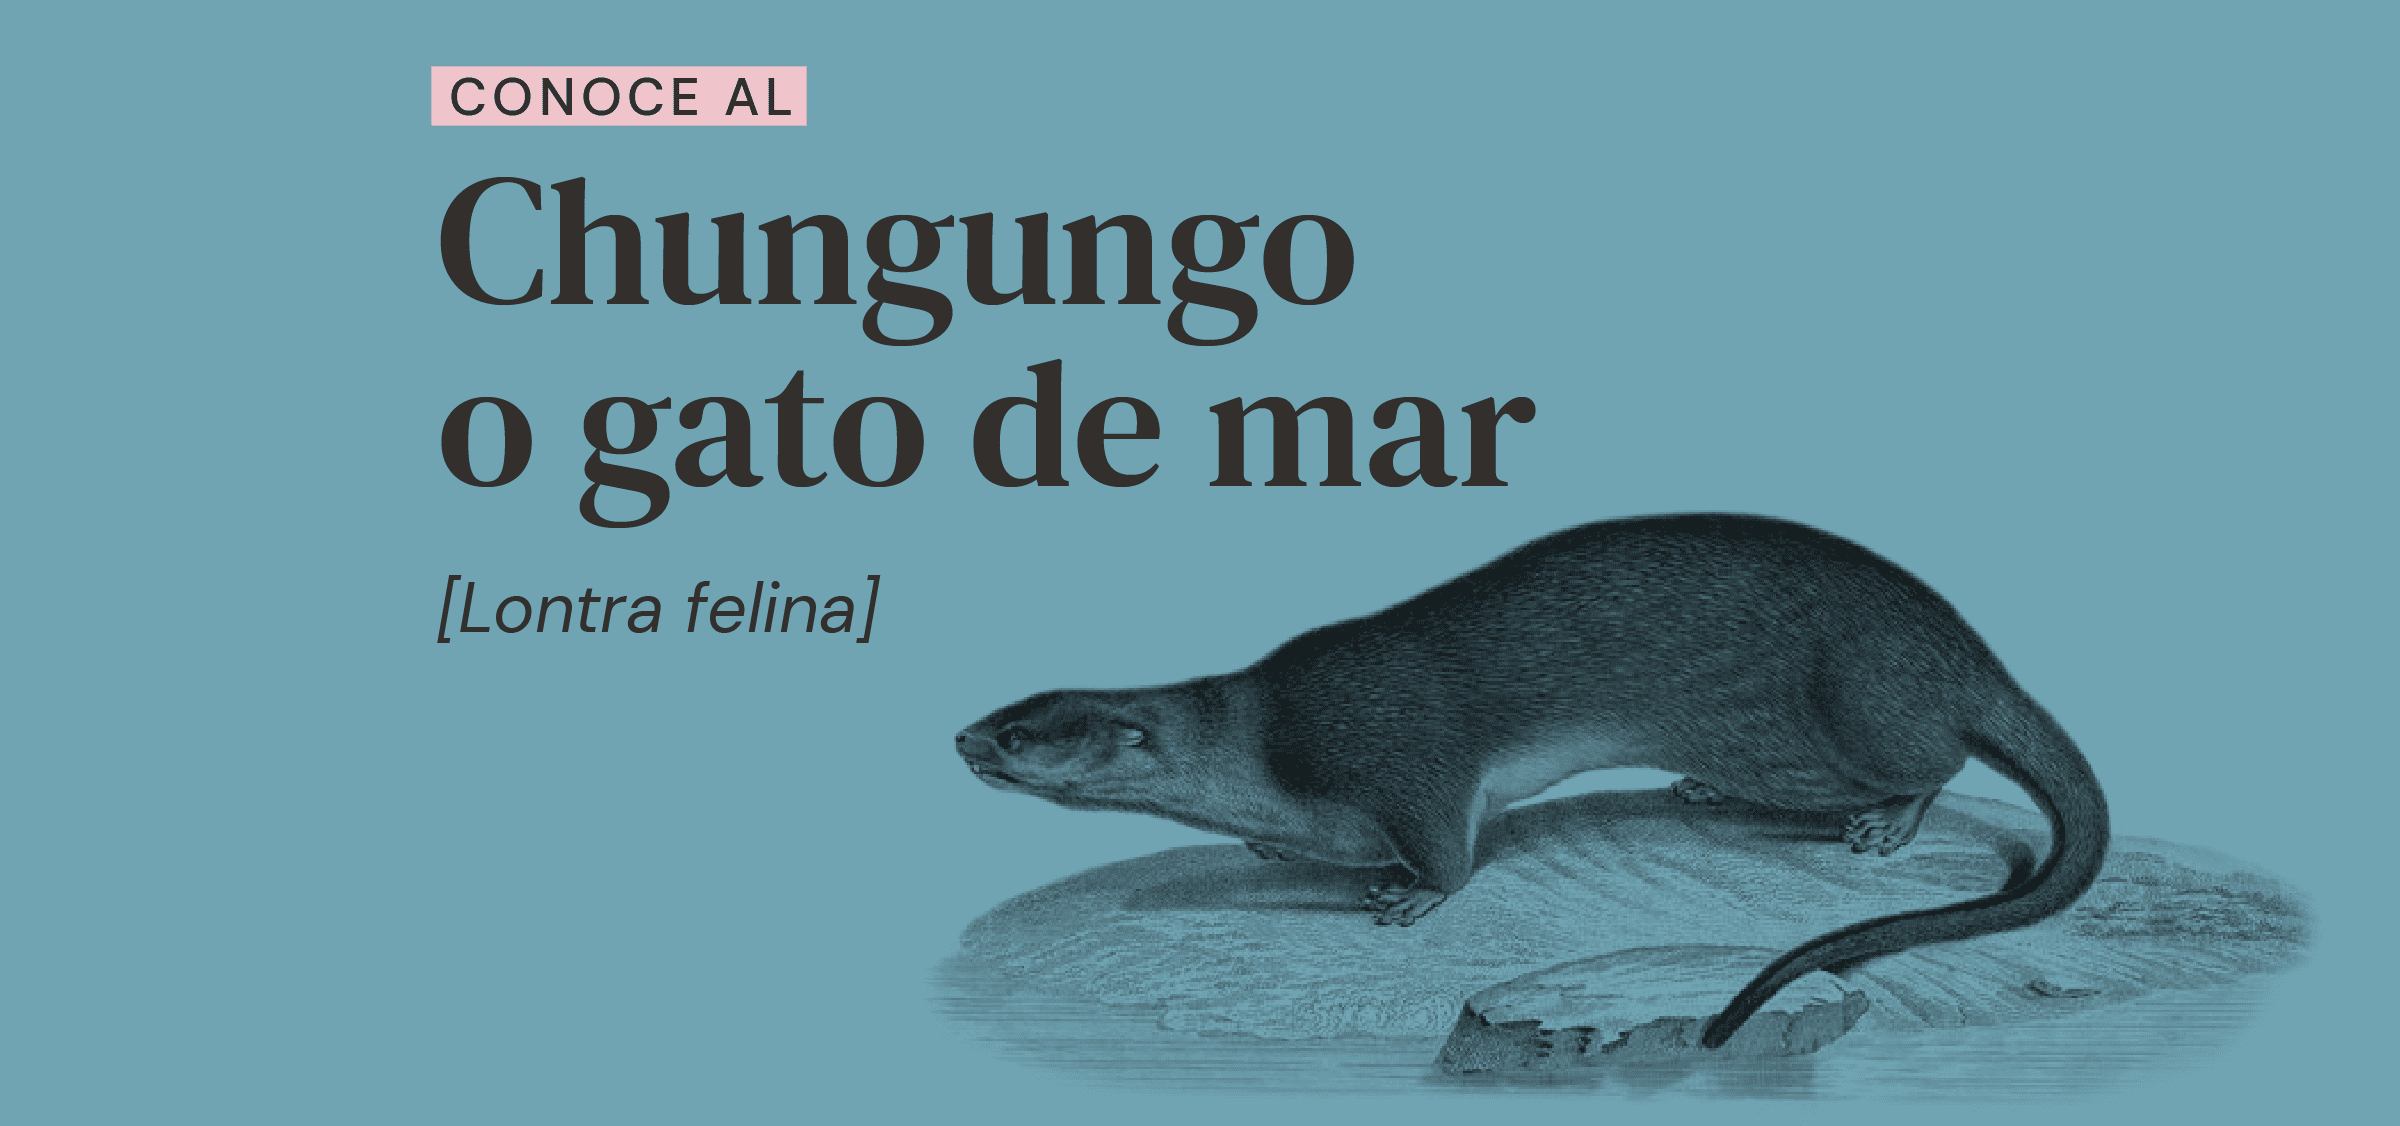 Chungungos: conoce a esta especie nativa que habita en Chile